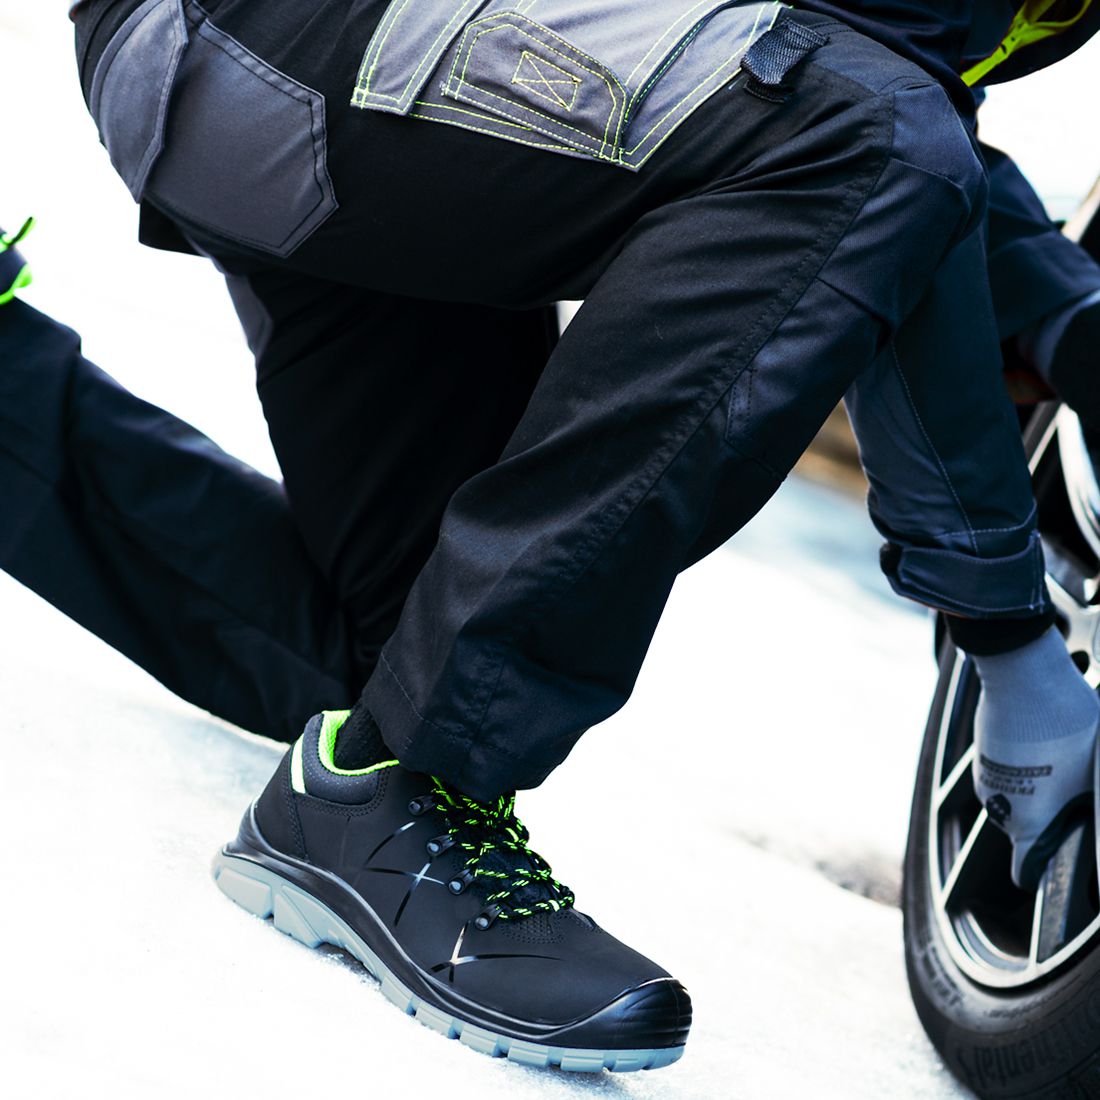 ACE Constructor S3-Arbeits-Sneakers - mit Stahlkappe - Sicherheits-Schuhe für die Arbeit  - Schwarz/Grün - 39